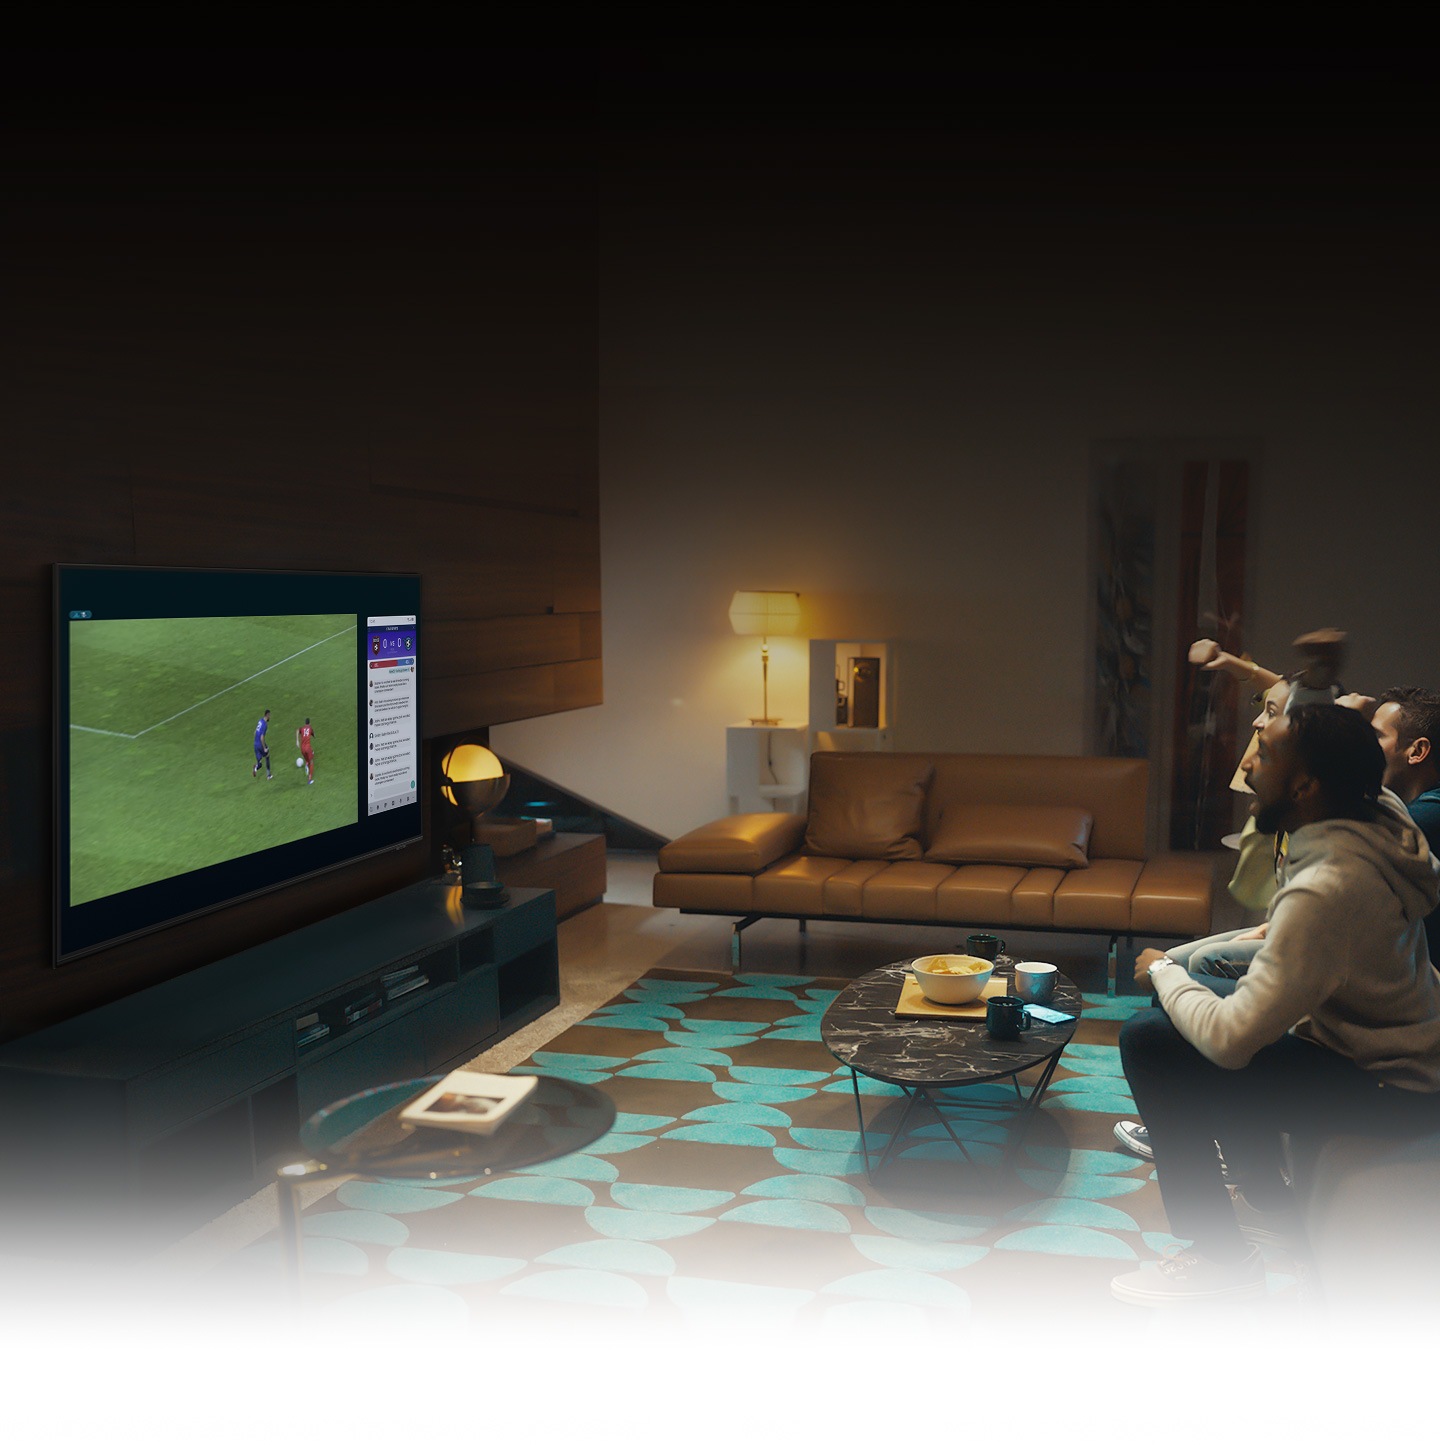 Skupina ljudi uporablja funkcijo QLED TV Multi view za uživanje v nogometni tekmi in ogled informacij o igranju ob tekmi hkrati na istem zaslonu.